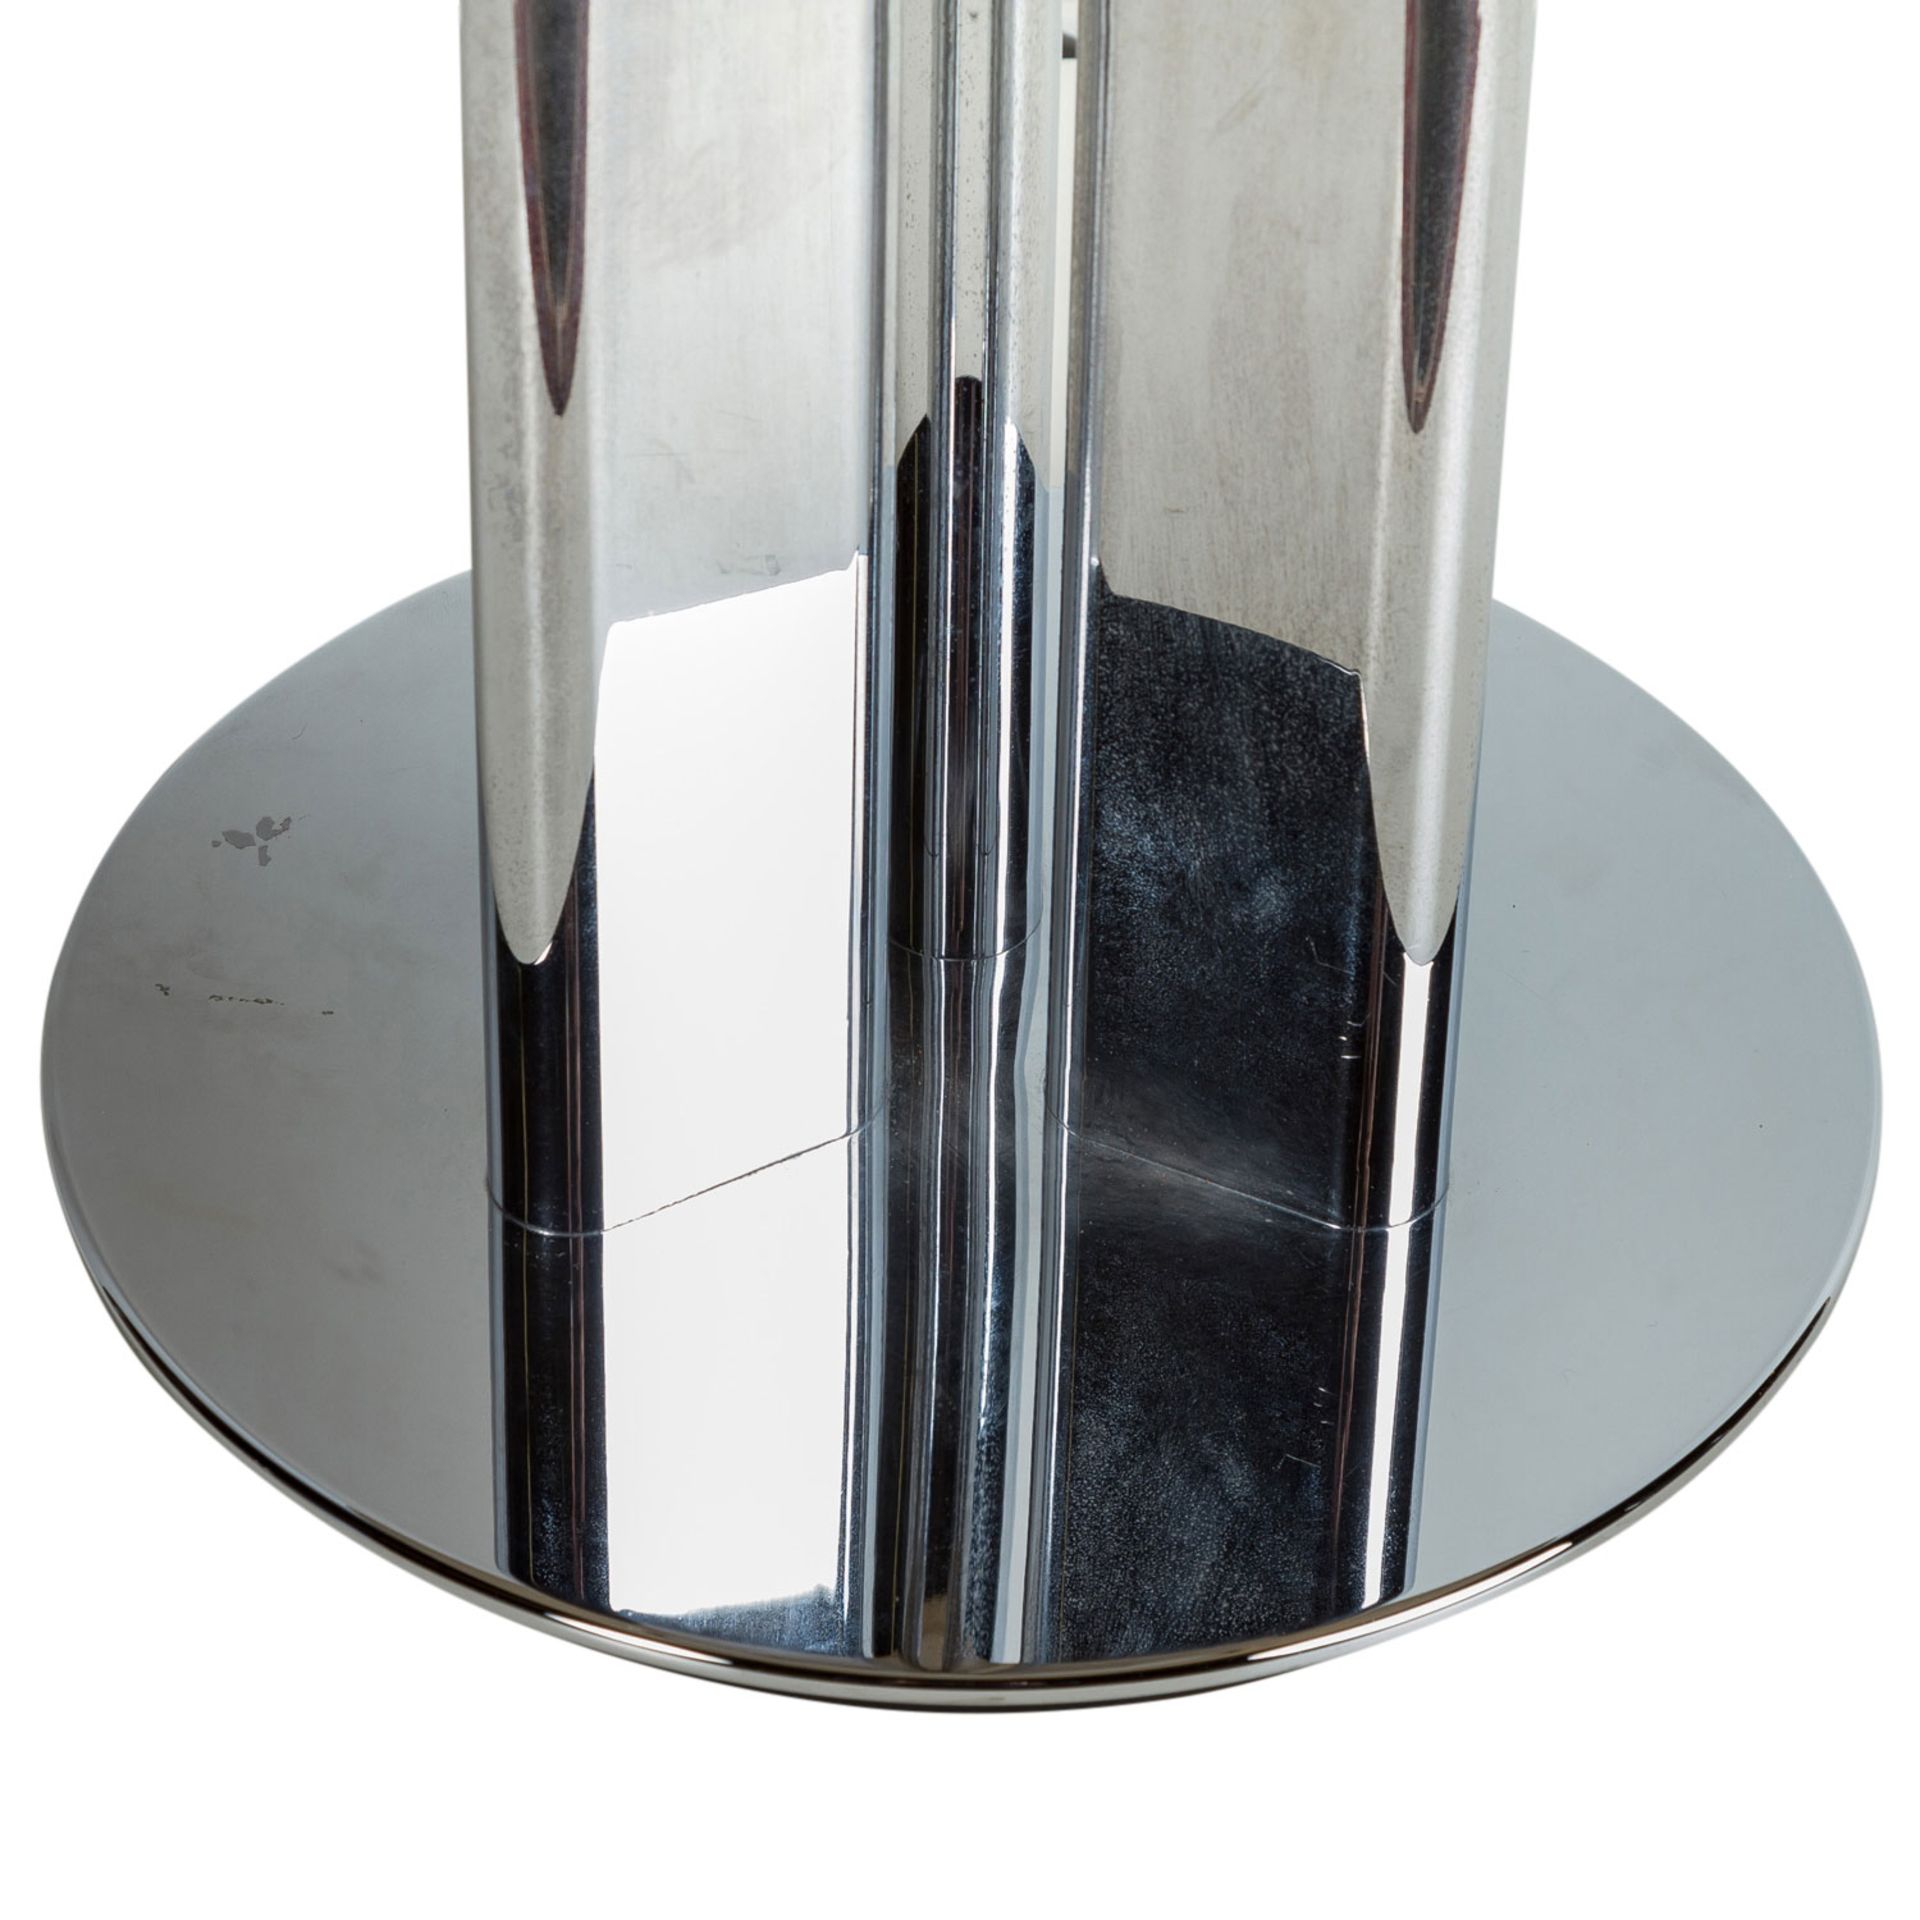 TISCHLAMPE1970er Jahre, 3 angeordnete Metallstreben bilden den Schaft, verchromt, Lamp - Image 3 of 3